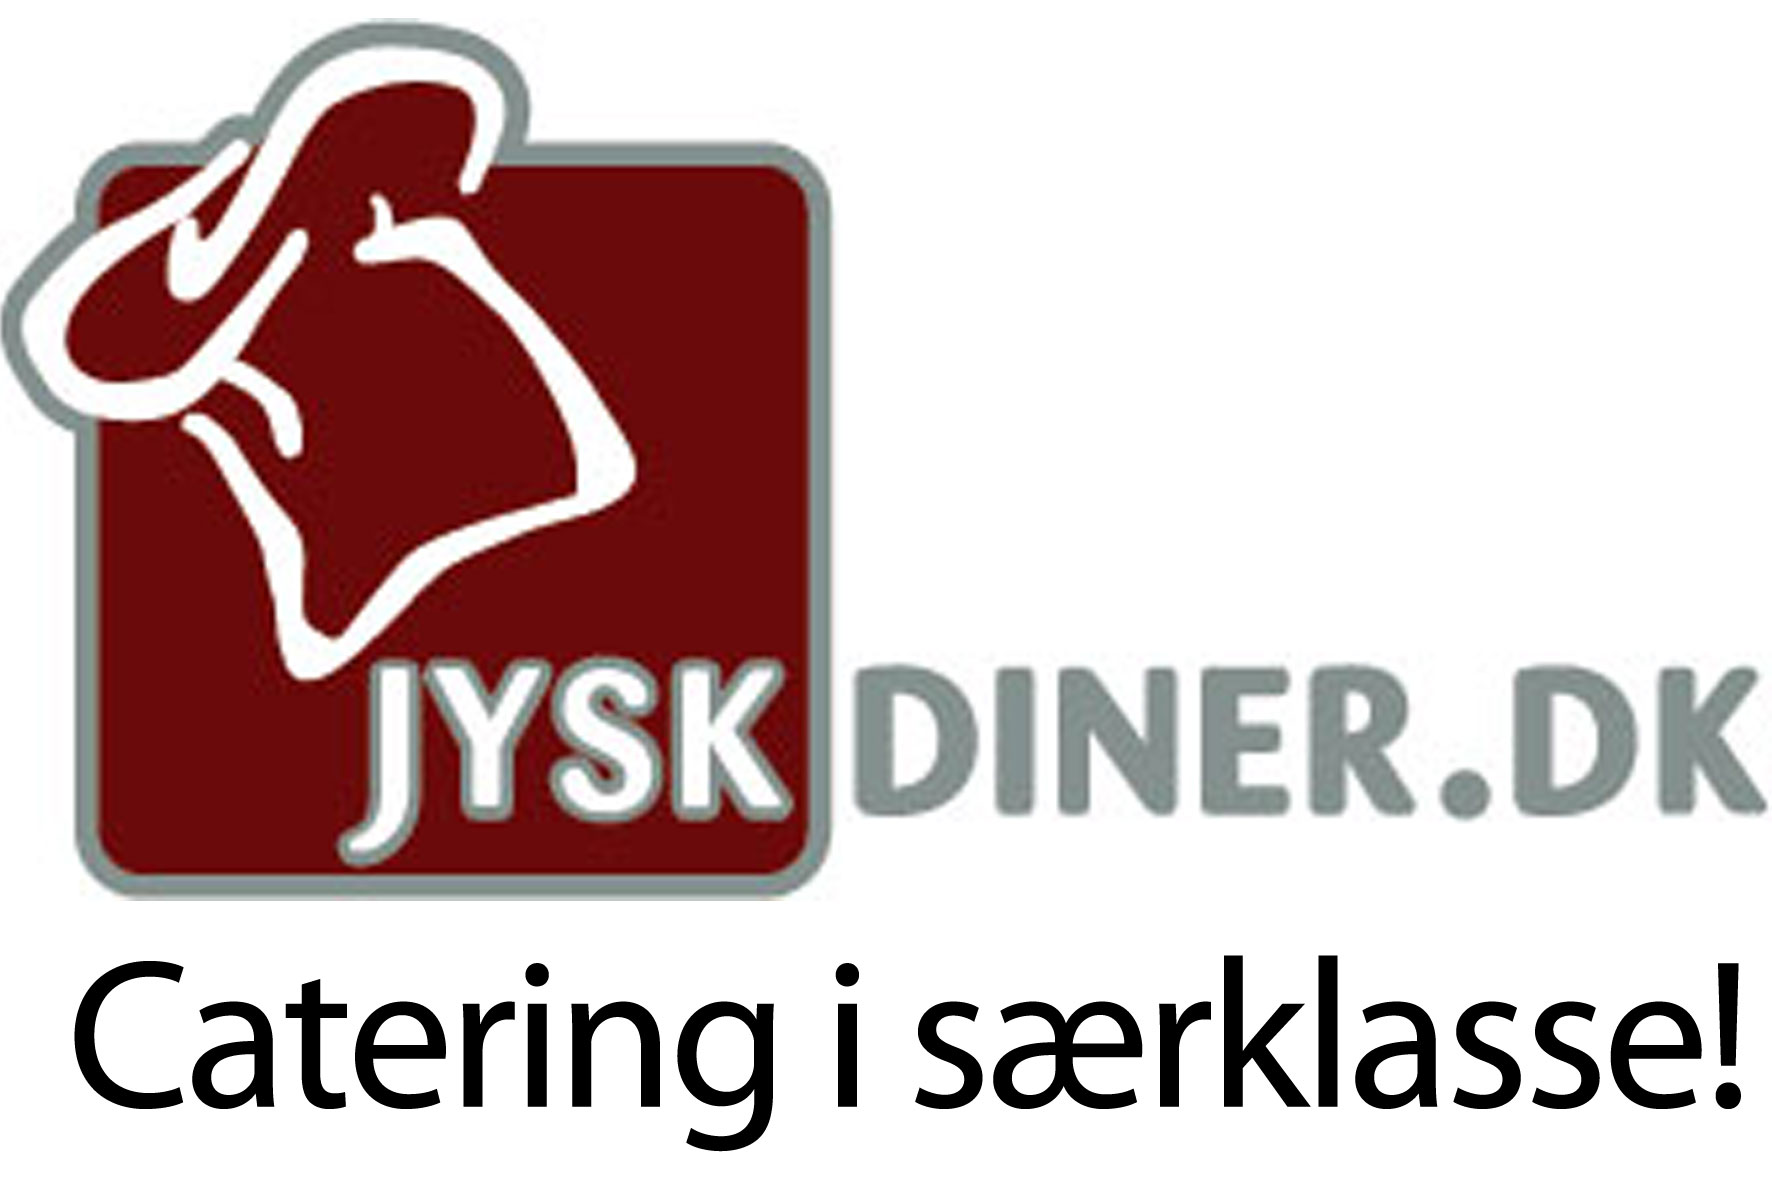 jysk-diner-logo-15-x-10-cm.jpg